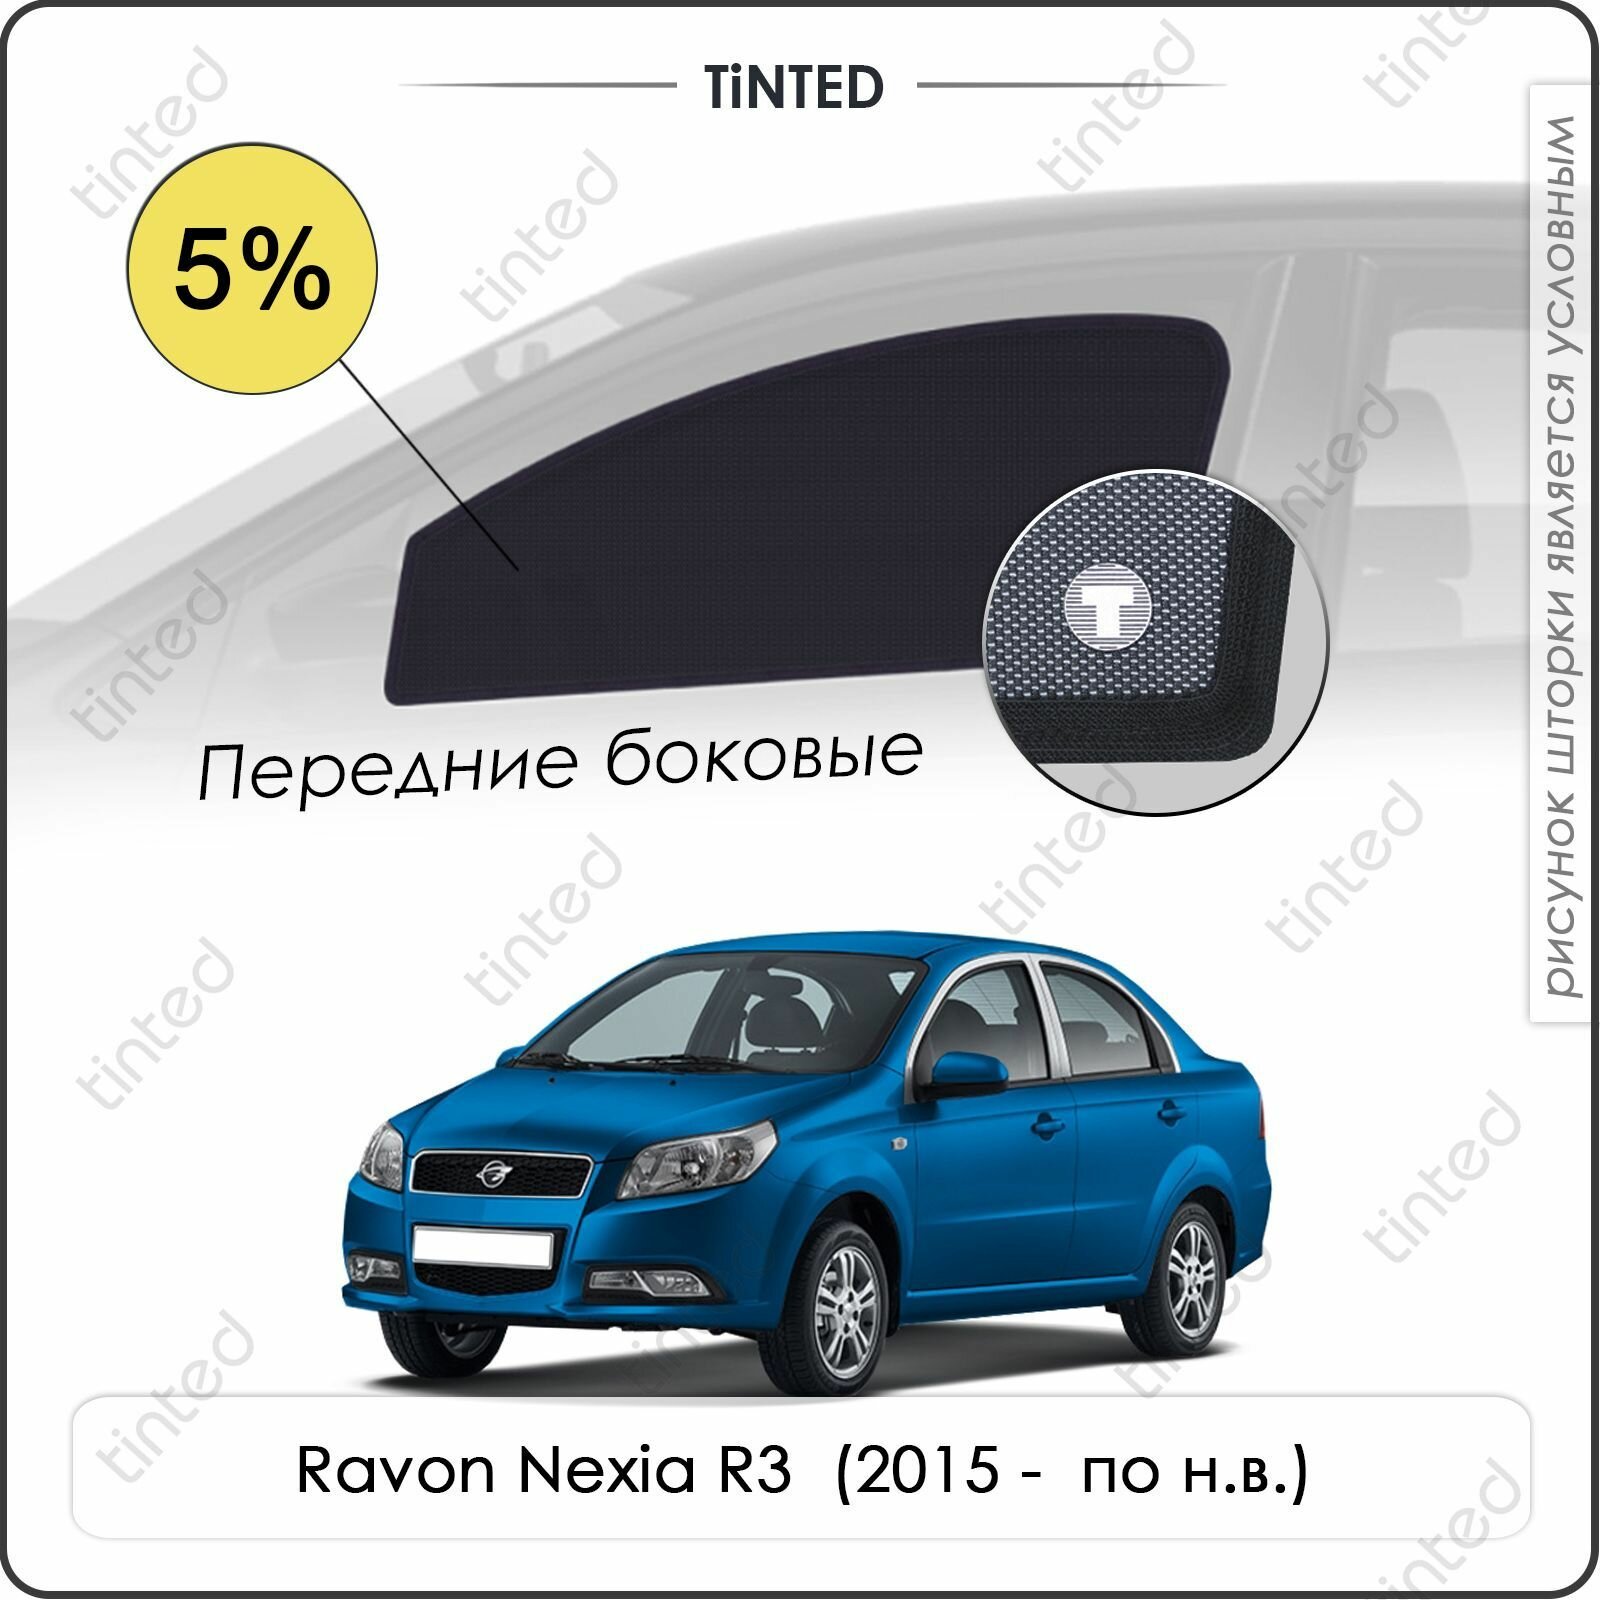 Шторки на автомобиль солнцезащитные Ravon Nexia R3 1 Седан 4дв. (2015 - по н. в.) на задние двери 5% сетки от солнца в машину рэйвон нексия Каркасные автошторки Premium